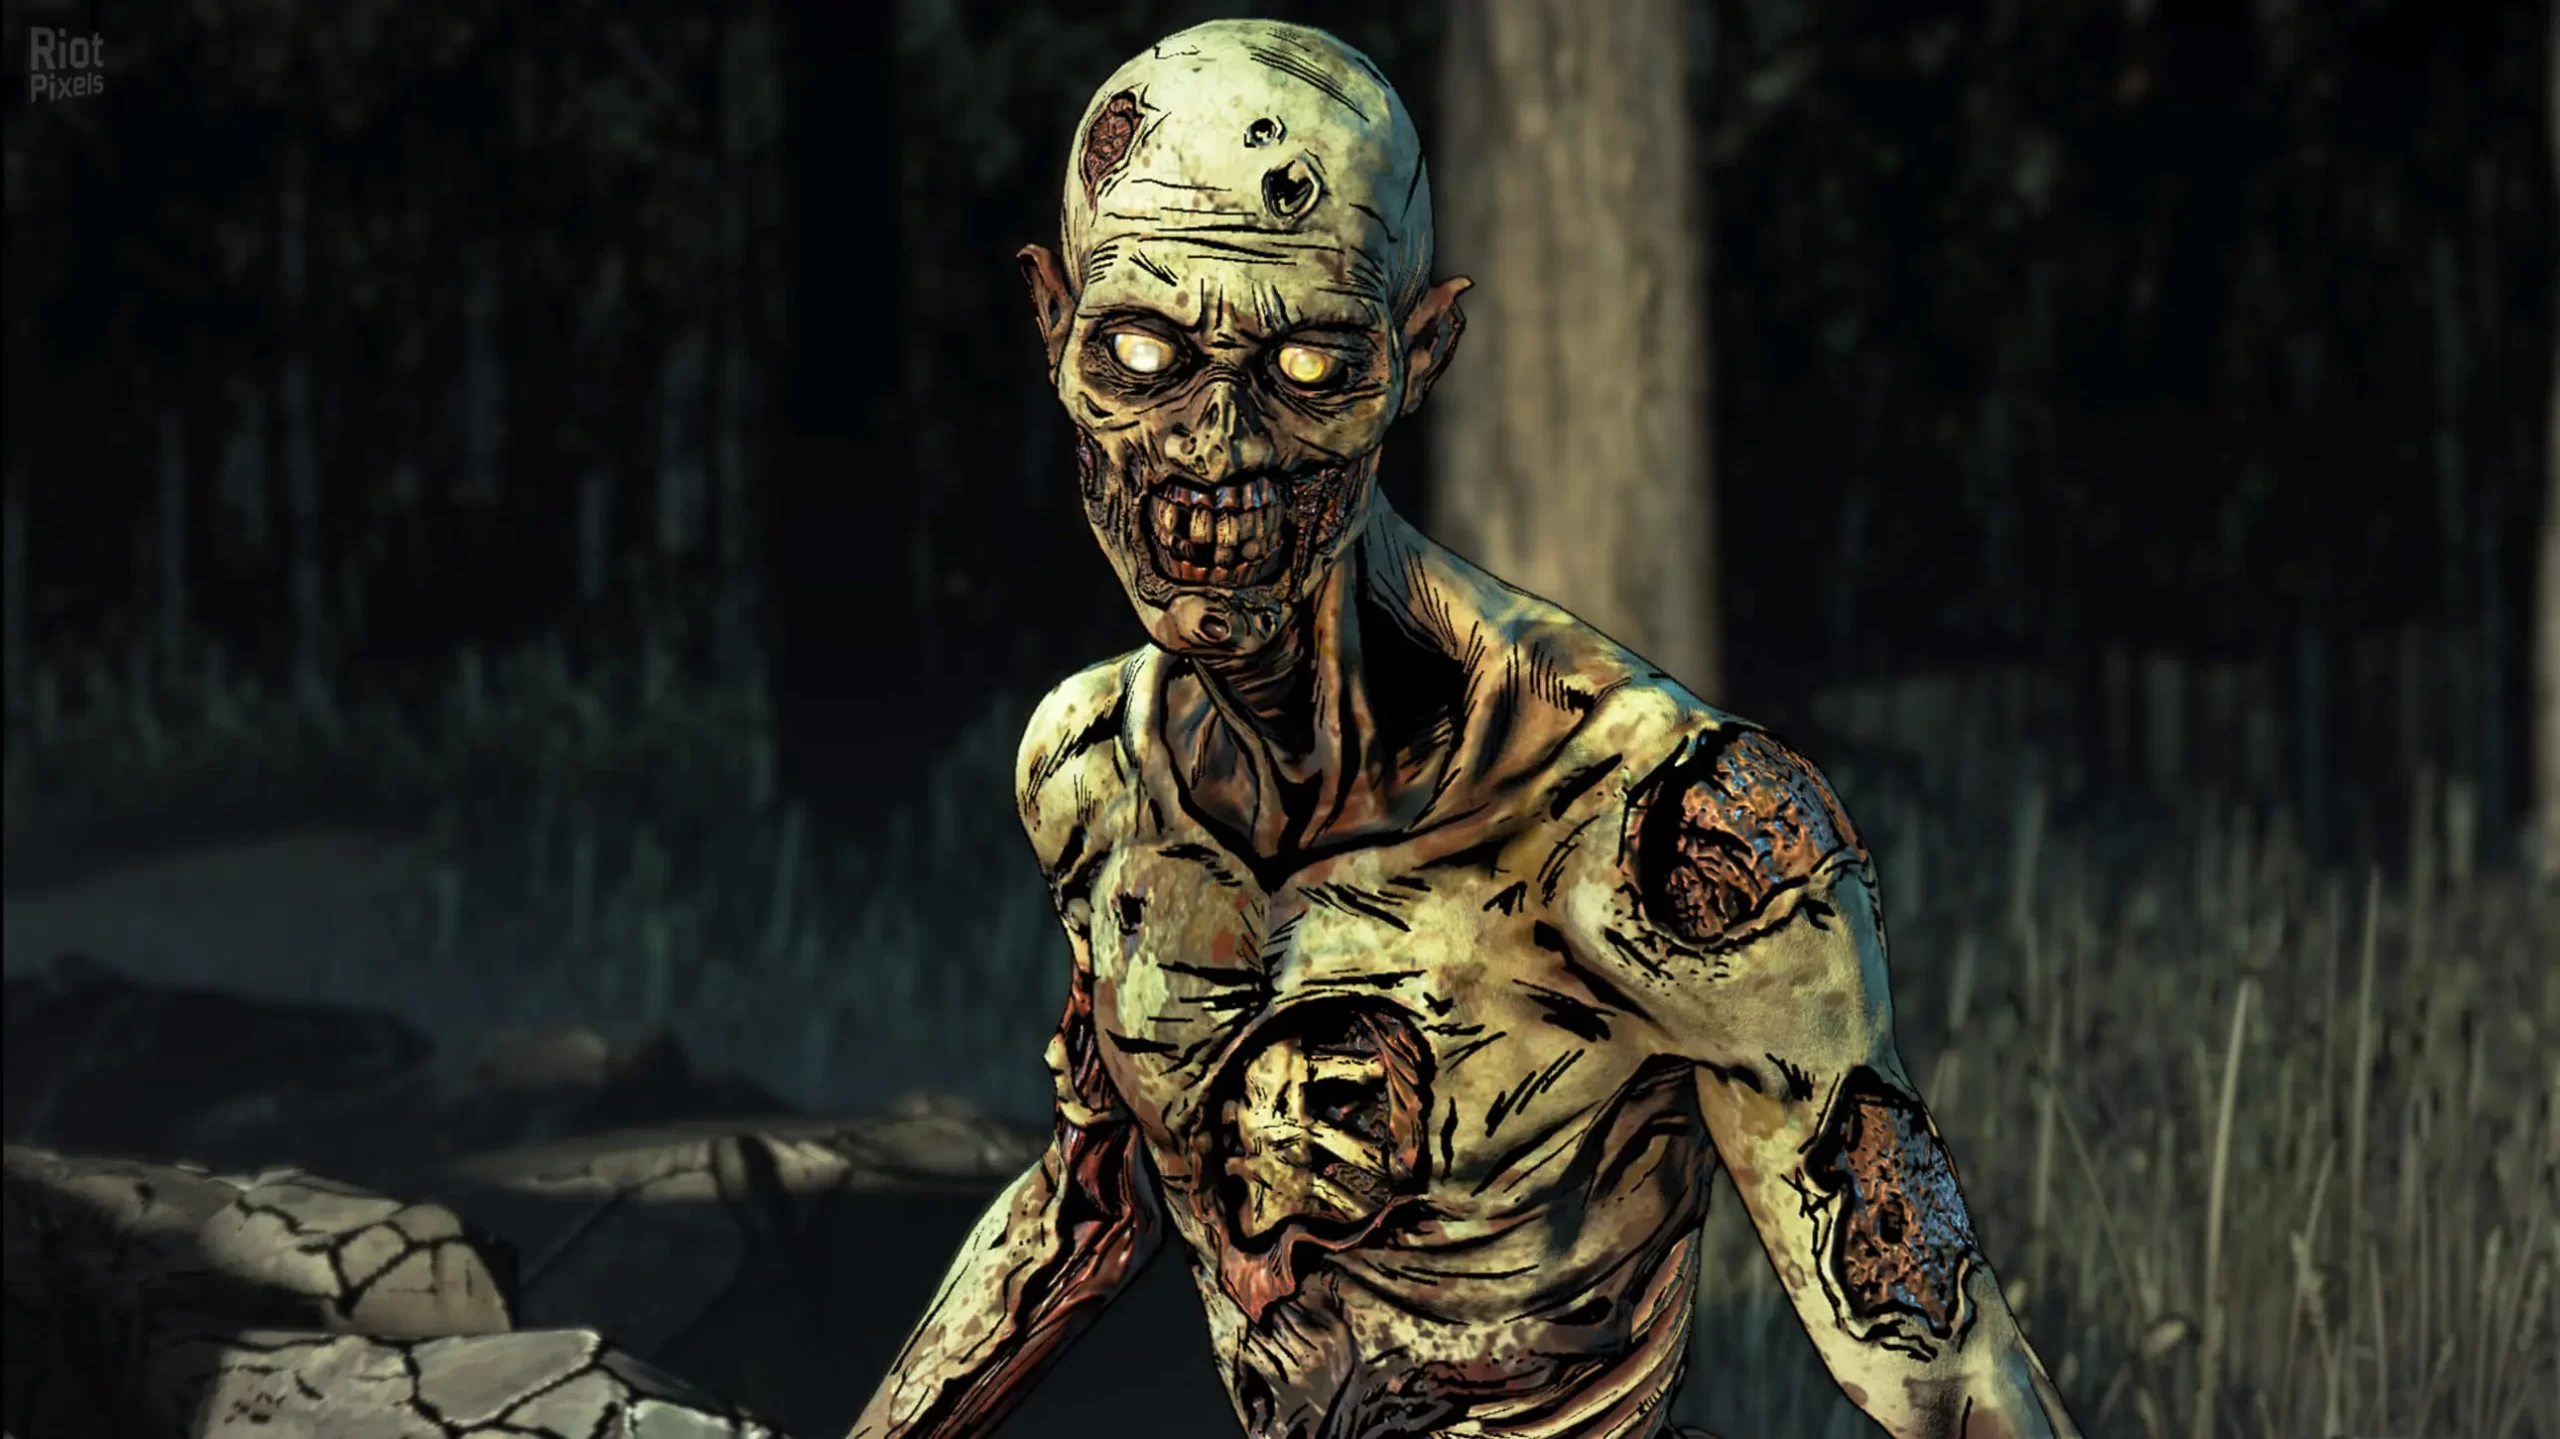 دانلود بازی The Walking Dead: The Final Season برای کامپیوتر PC